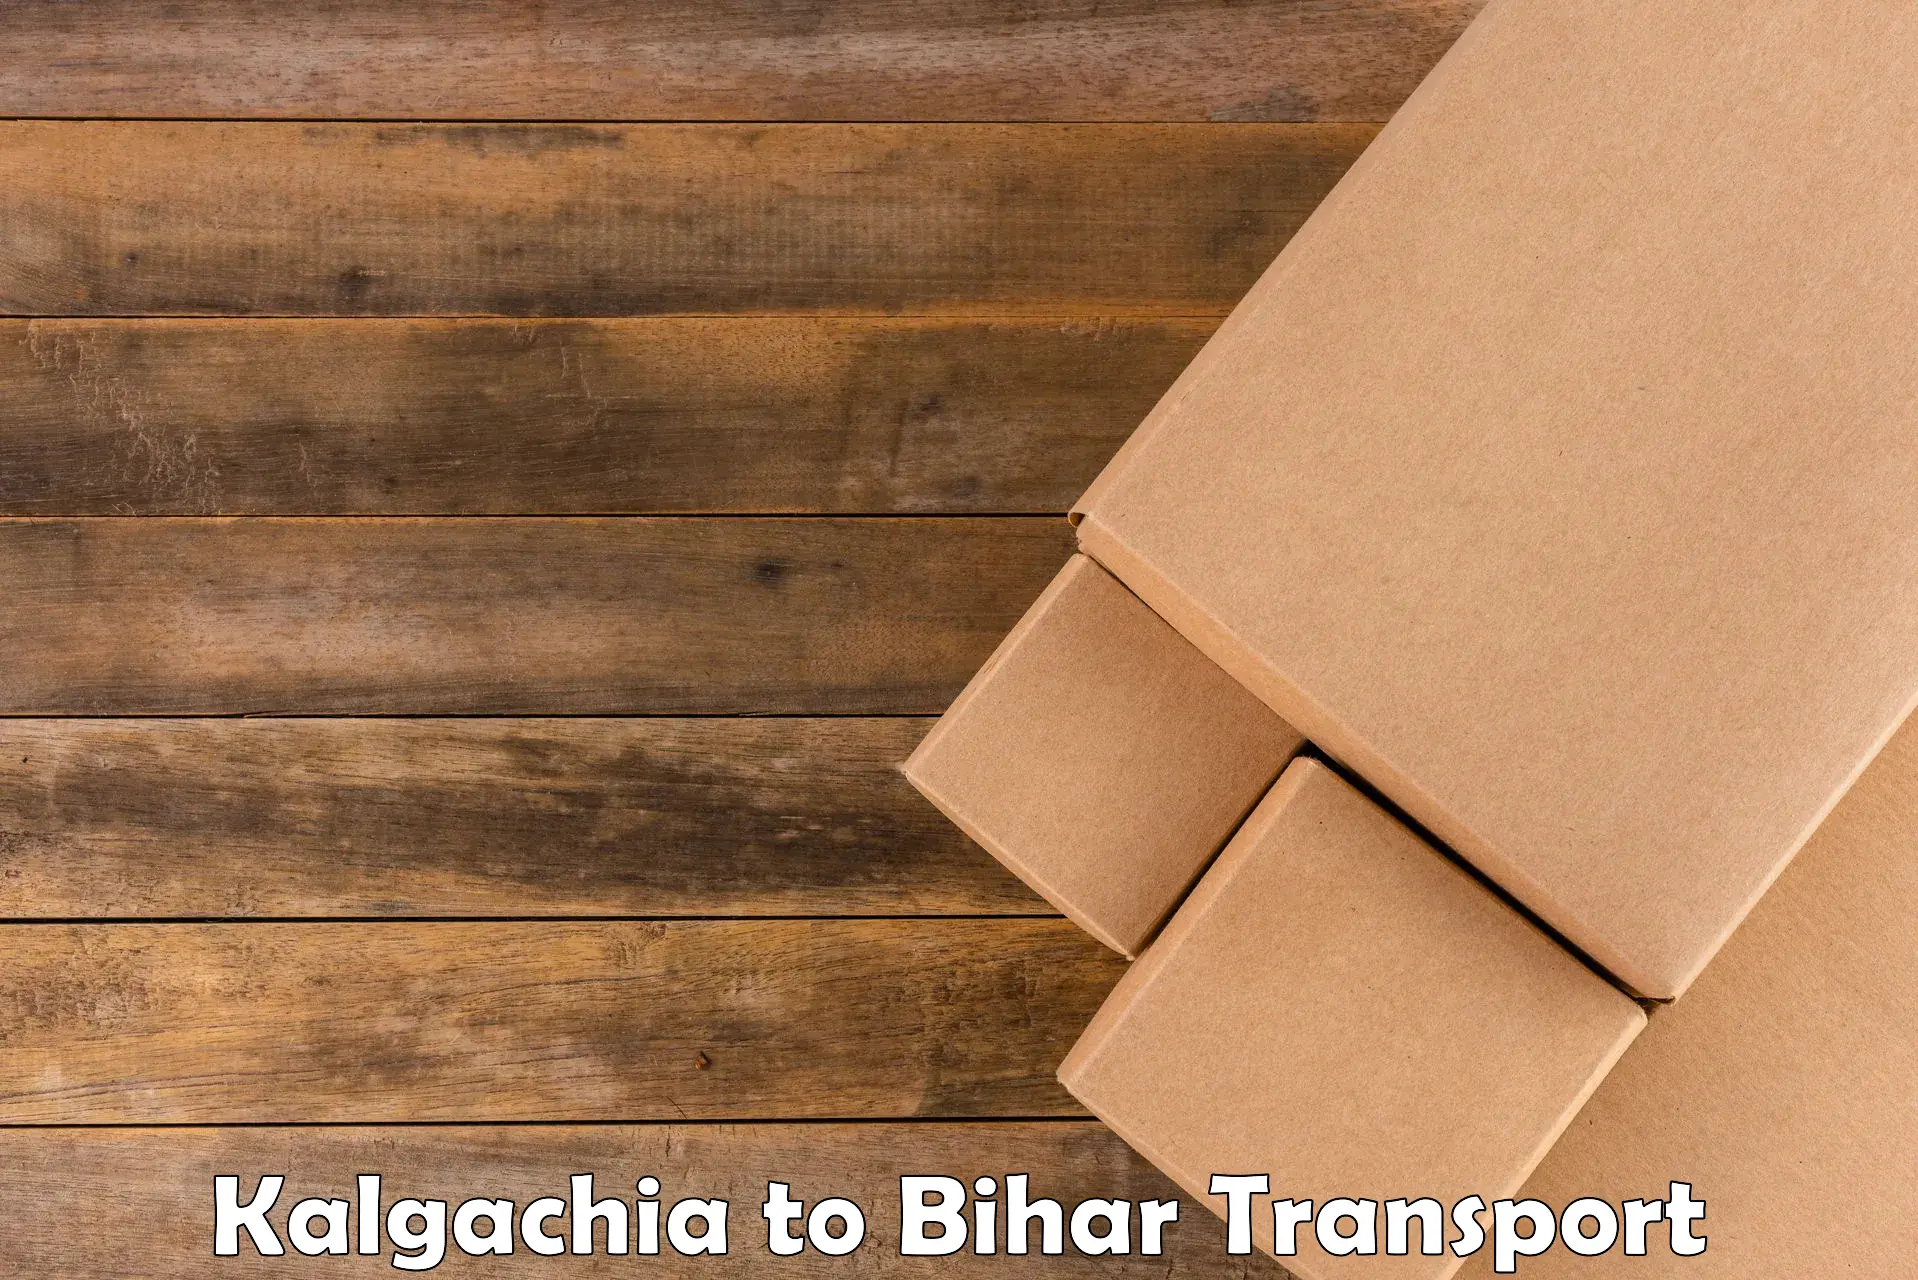 Parcel transport services Kalgachia to Madhepura